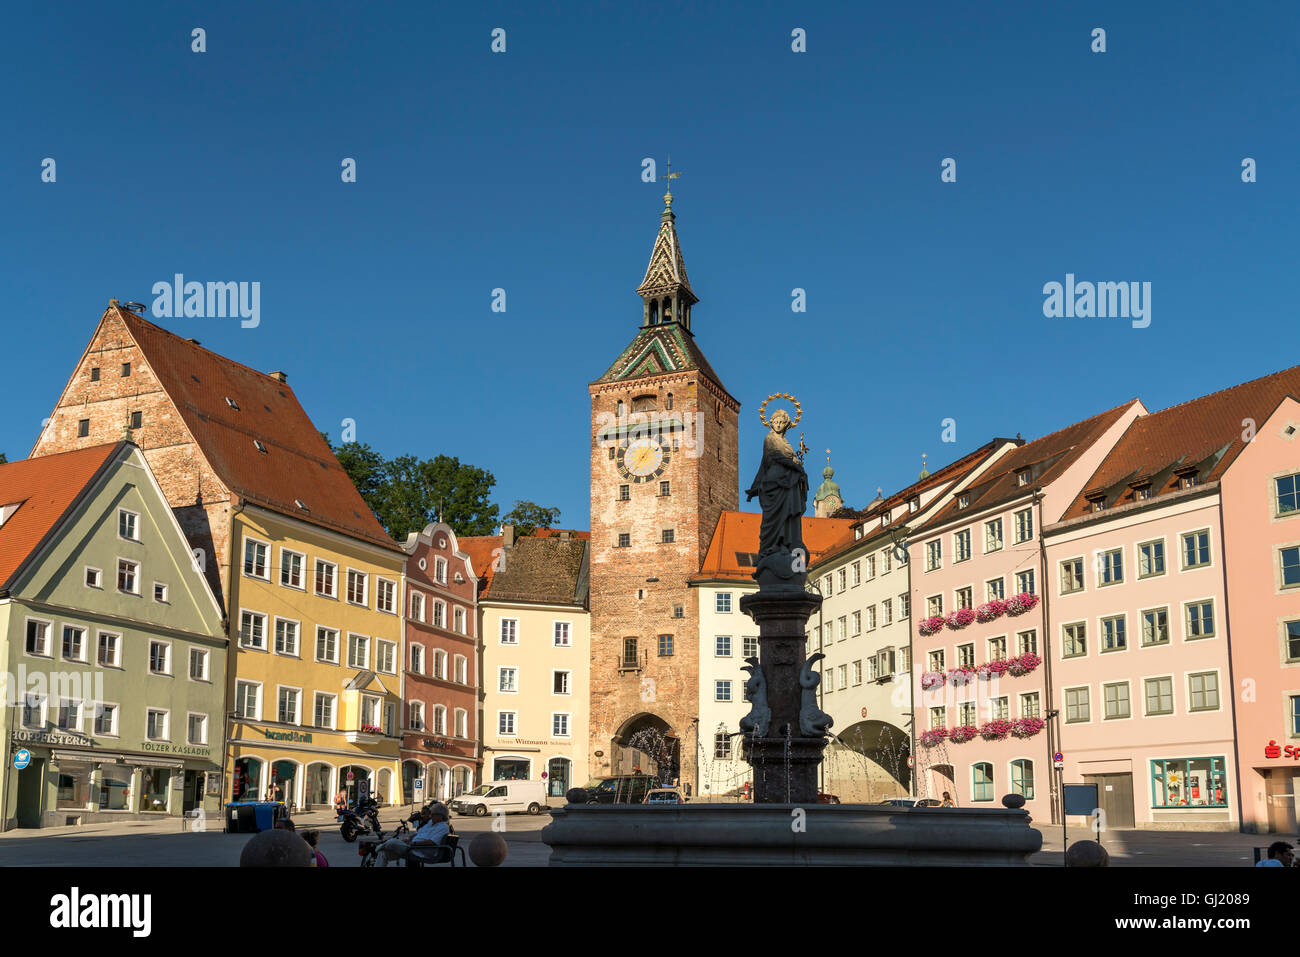 Hauptplatz der Altstadt mit Marias Brunnen und Turm Schmalzturm, Landsberg am Lech, Bayern, Deutschland Stockfoto